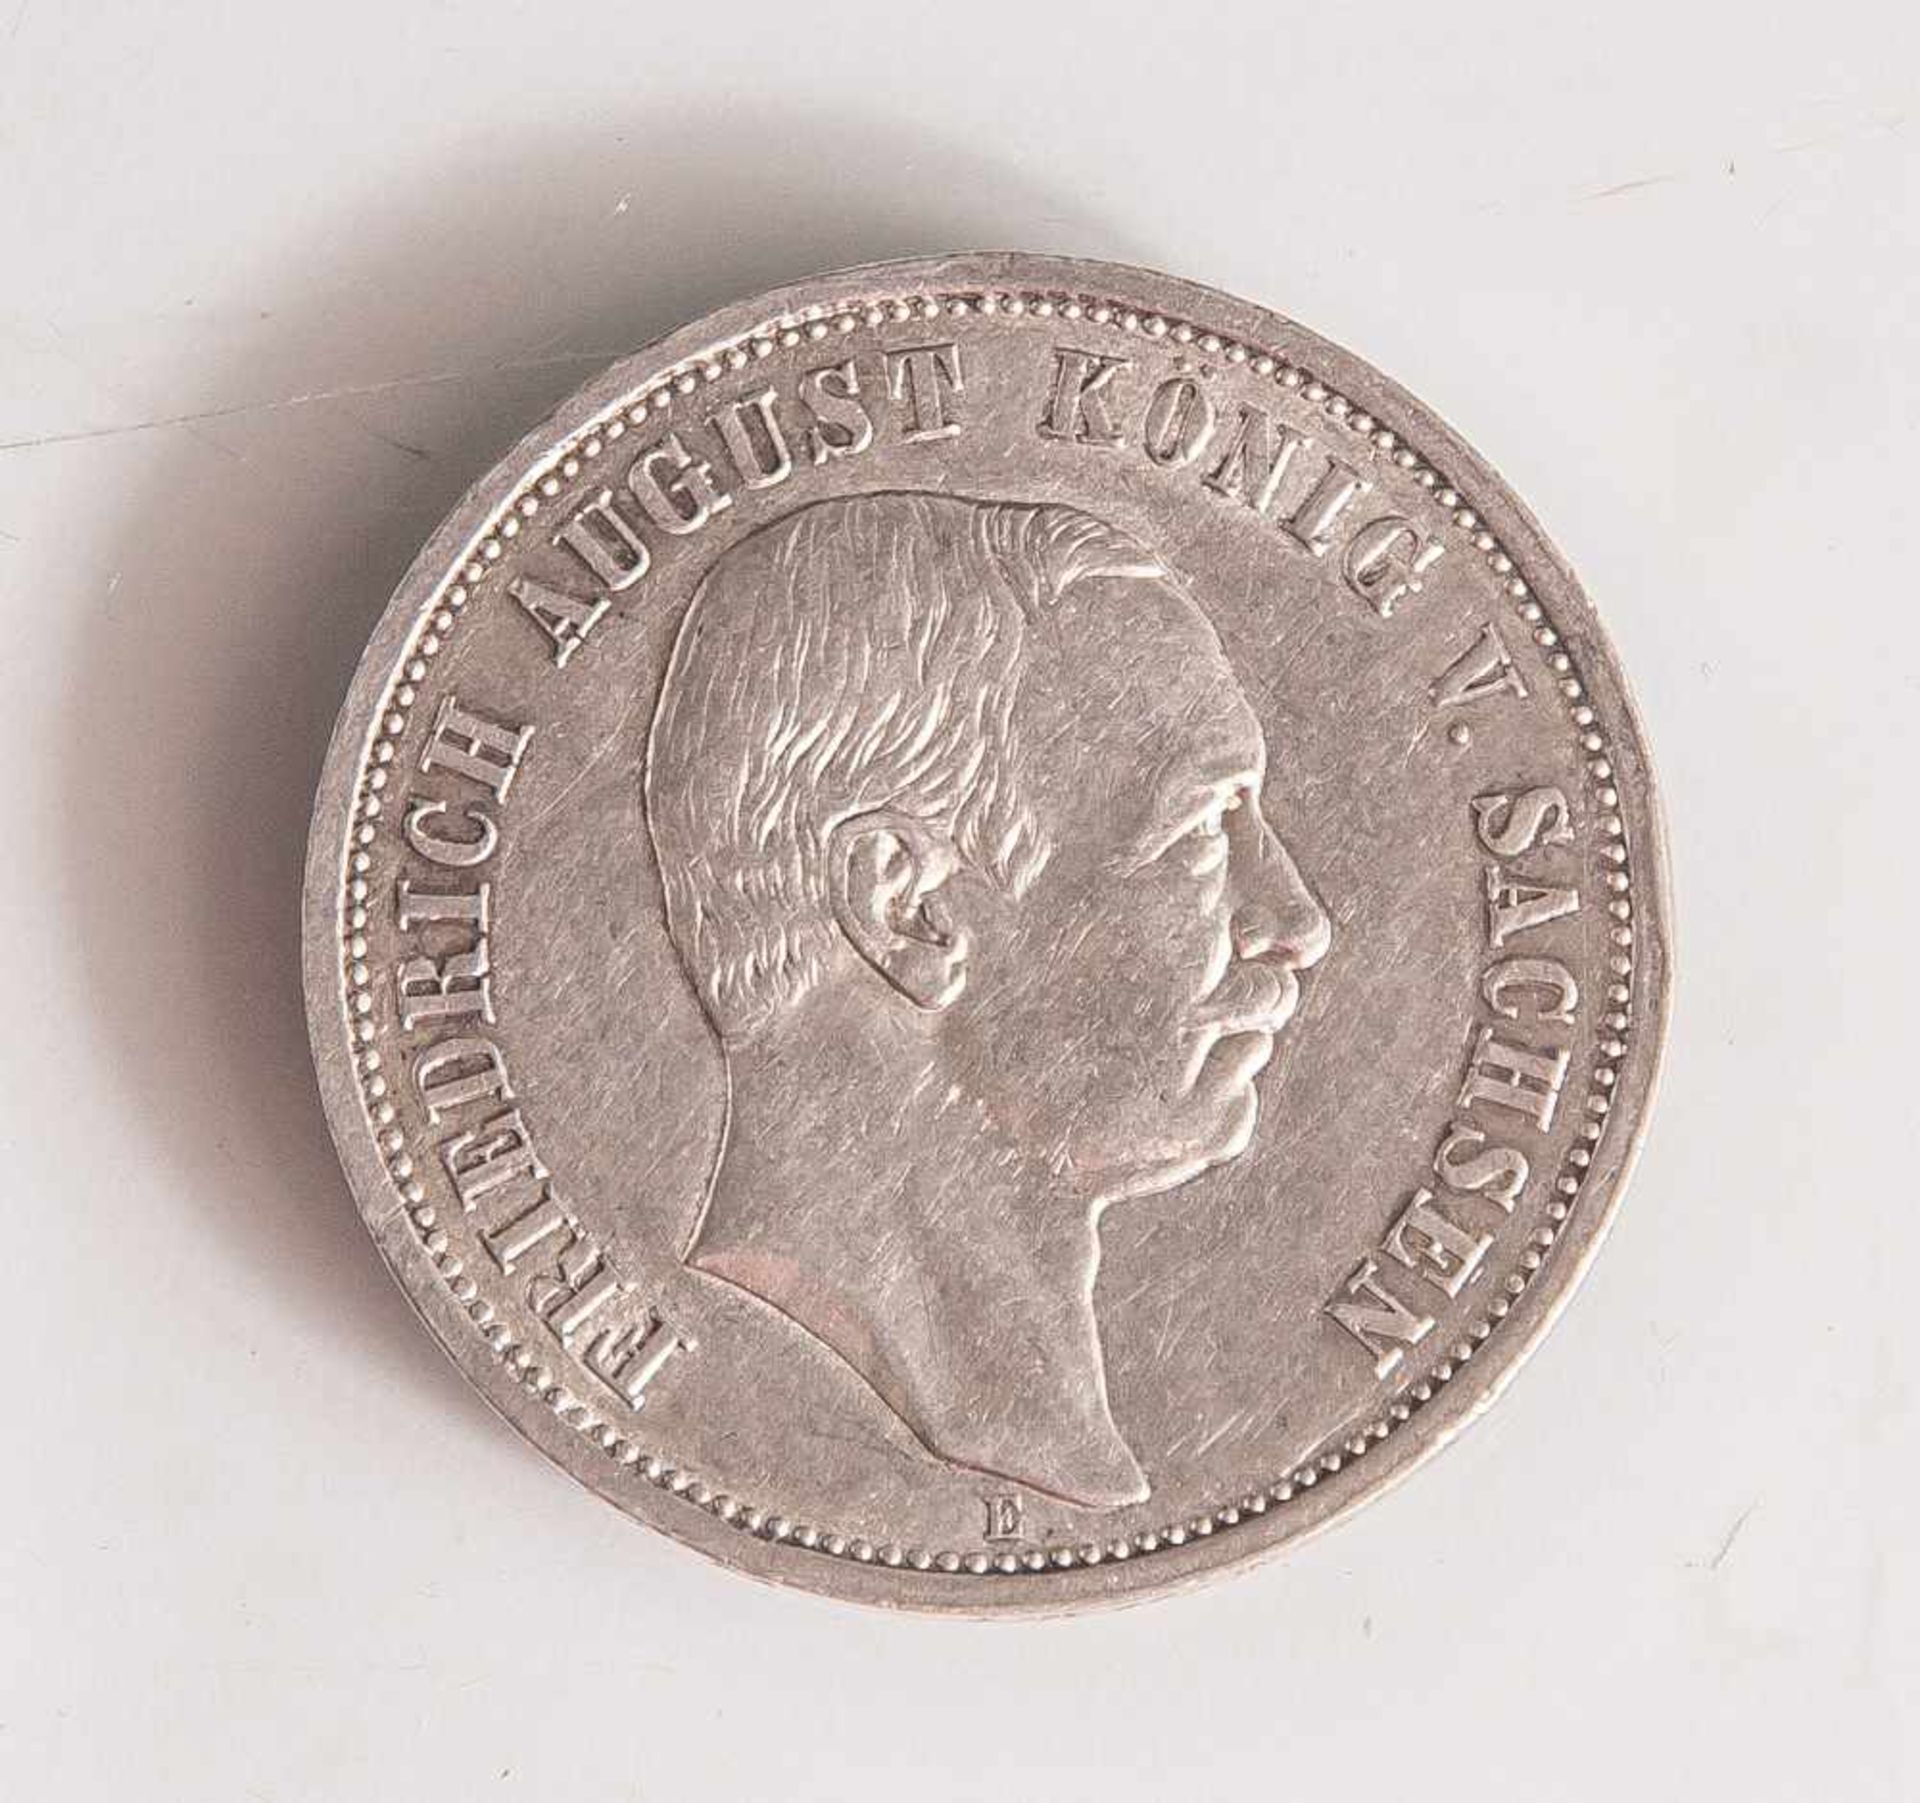 1 Münze, Deutsches Reich, 1912, E, 3 Mark, Friedrich August von Sachsen.